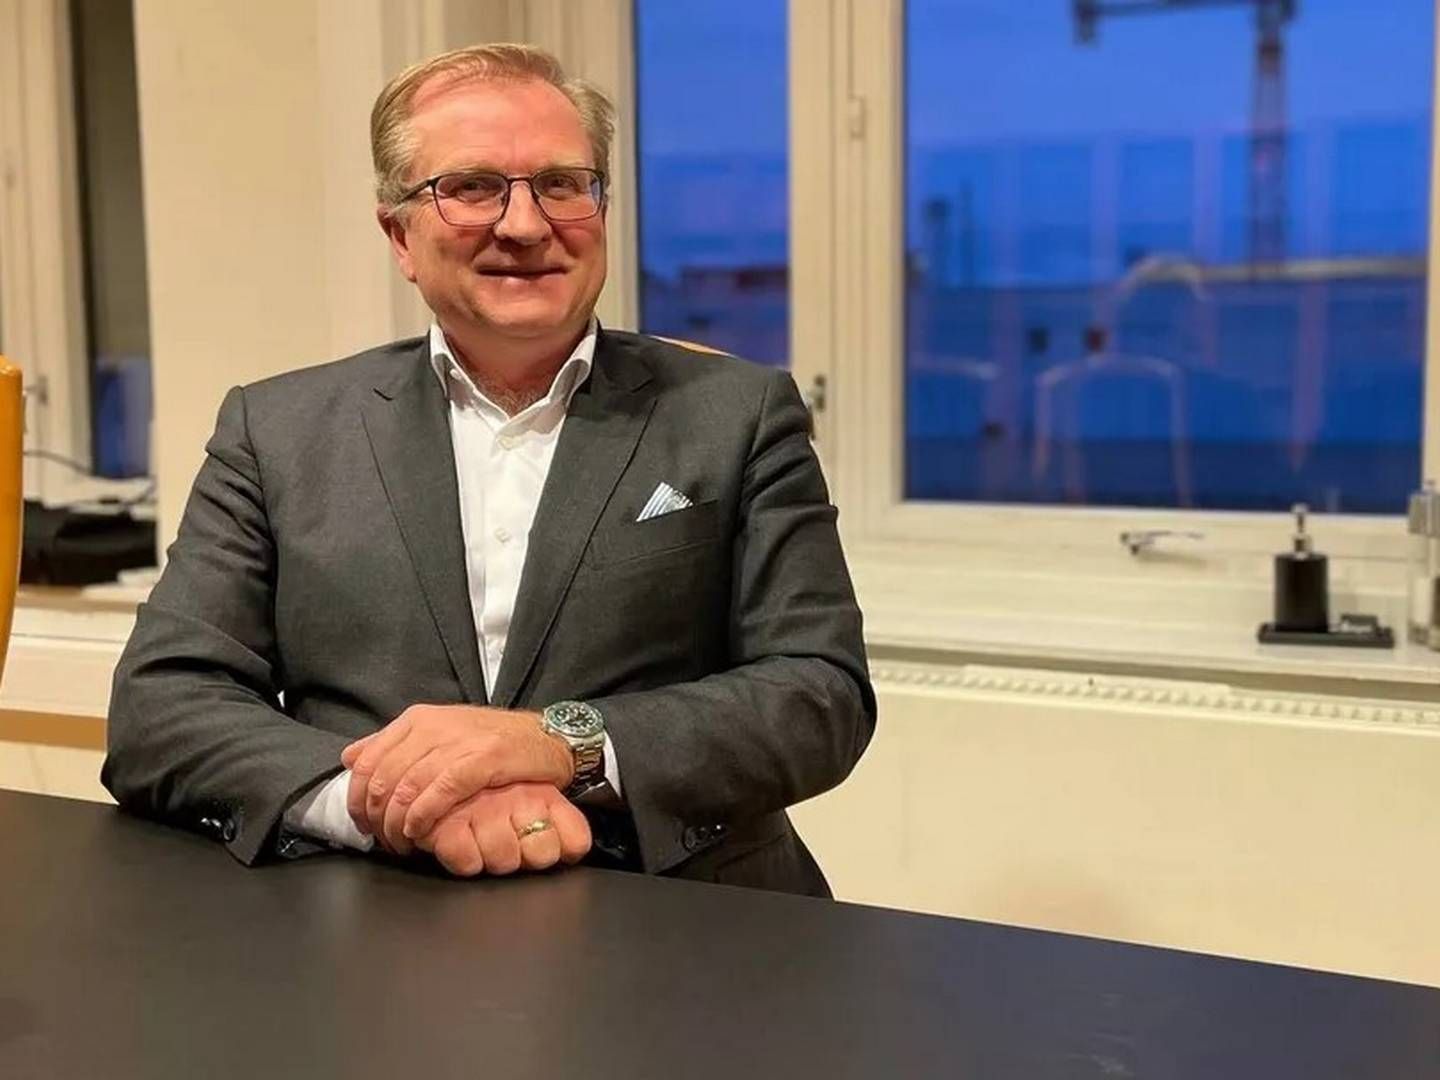 FORNØYD: Managing partner Trond Werner Lunde i Kogstad Lunde & Co er fornøyd med den nye partnersigneringen. | Foto: Stian Olsen / AdvokatWatch